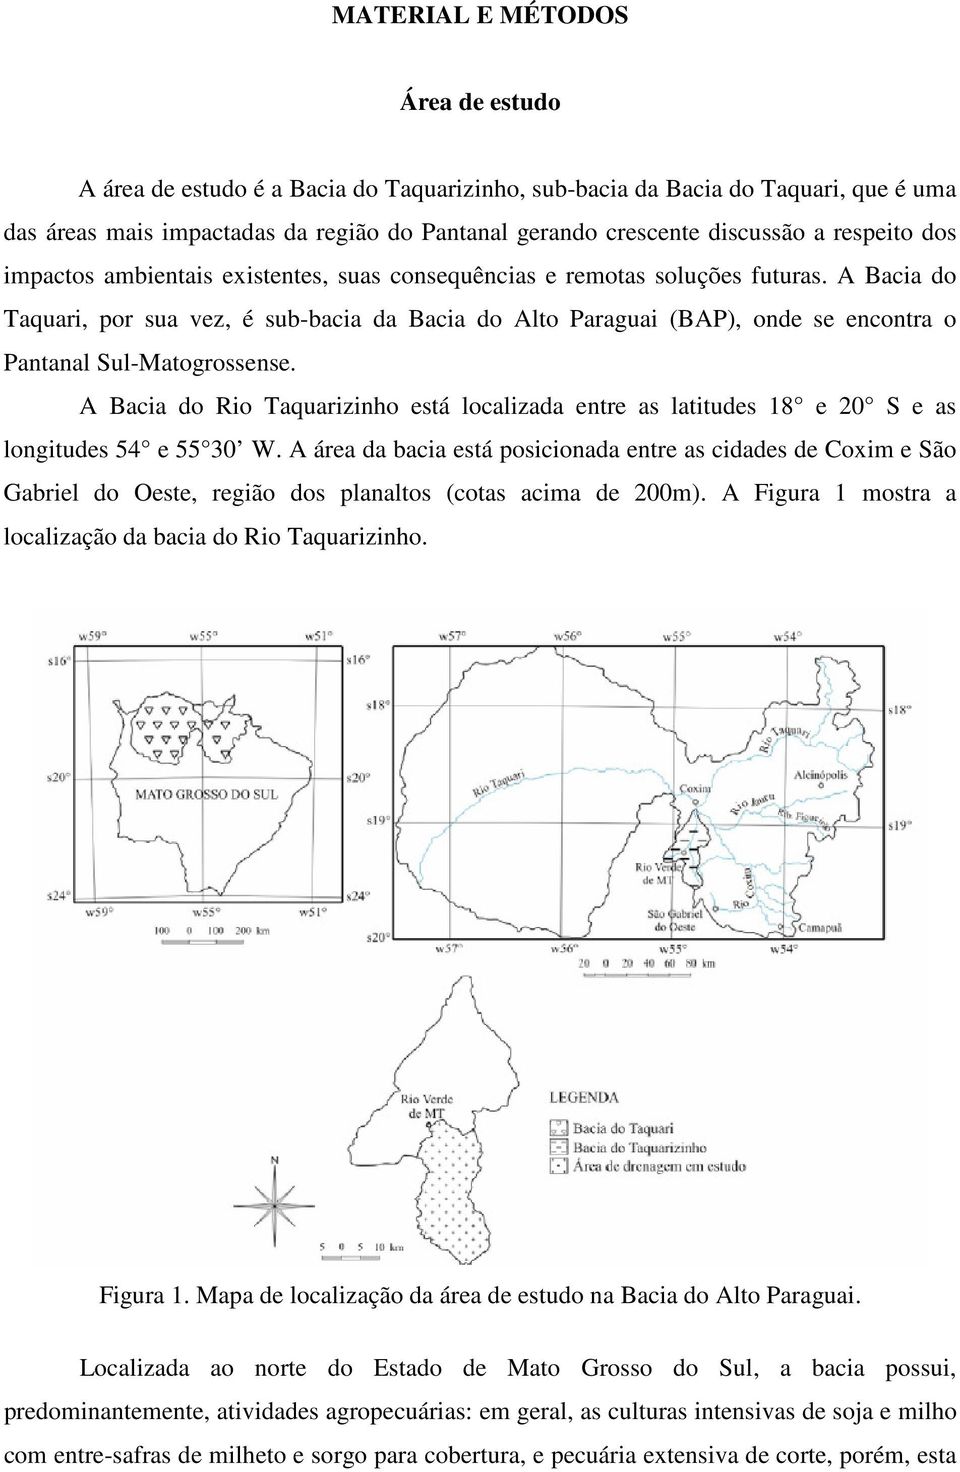 A Bacia do Taquari, por sua vez, é sub-bacia da Bacia do Alto Paraguai (BAP), onde se encontra o Pantanal Sul-Matogrossense.